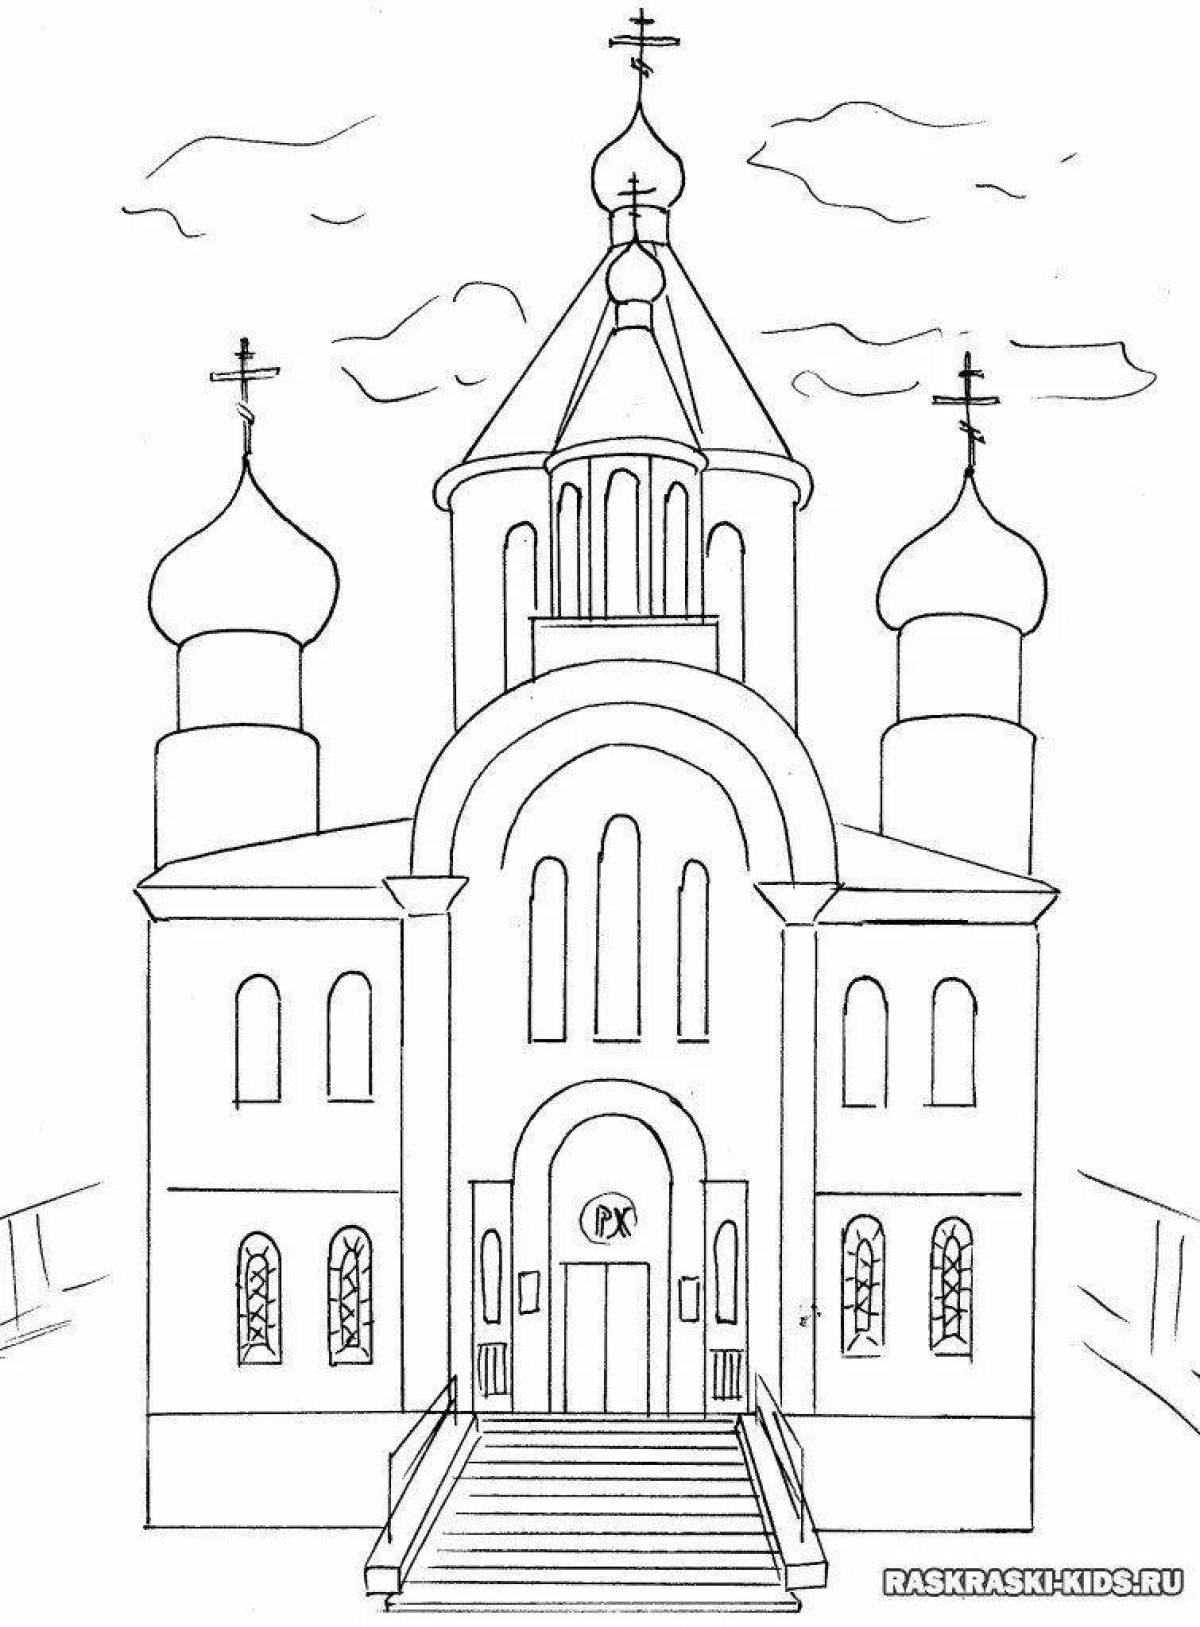 Fun church drawing